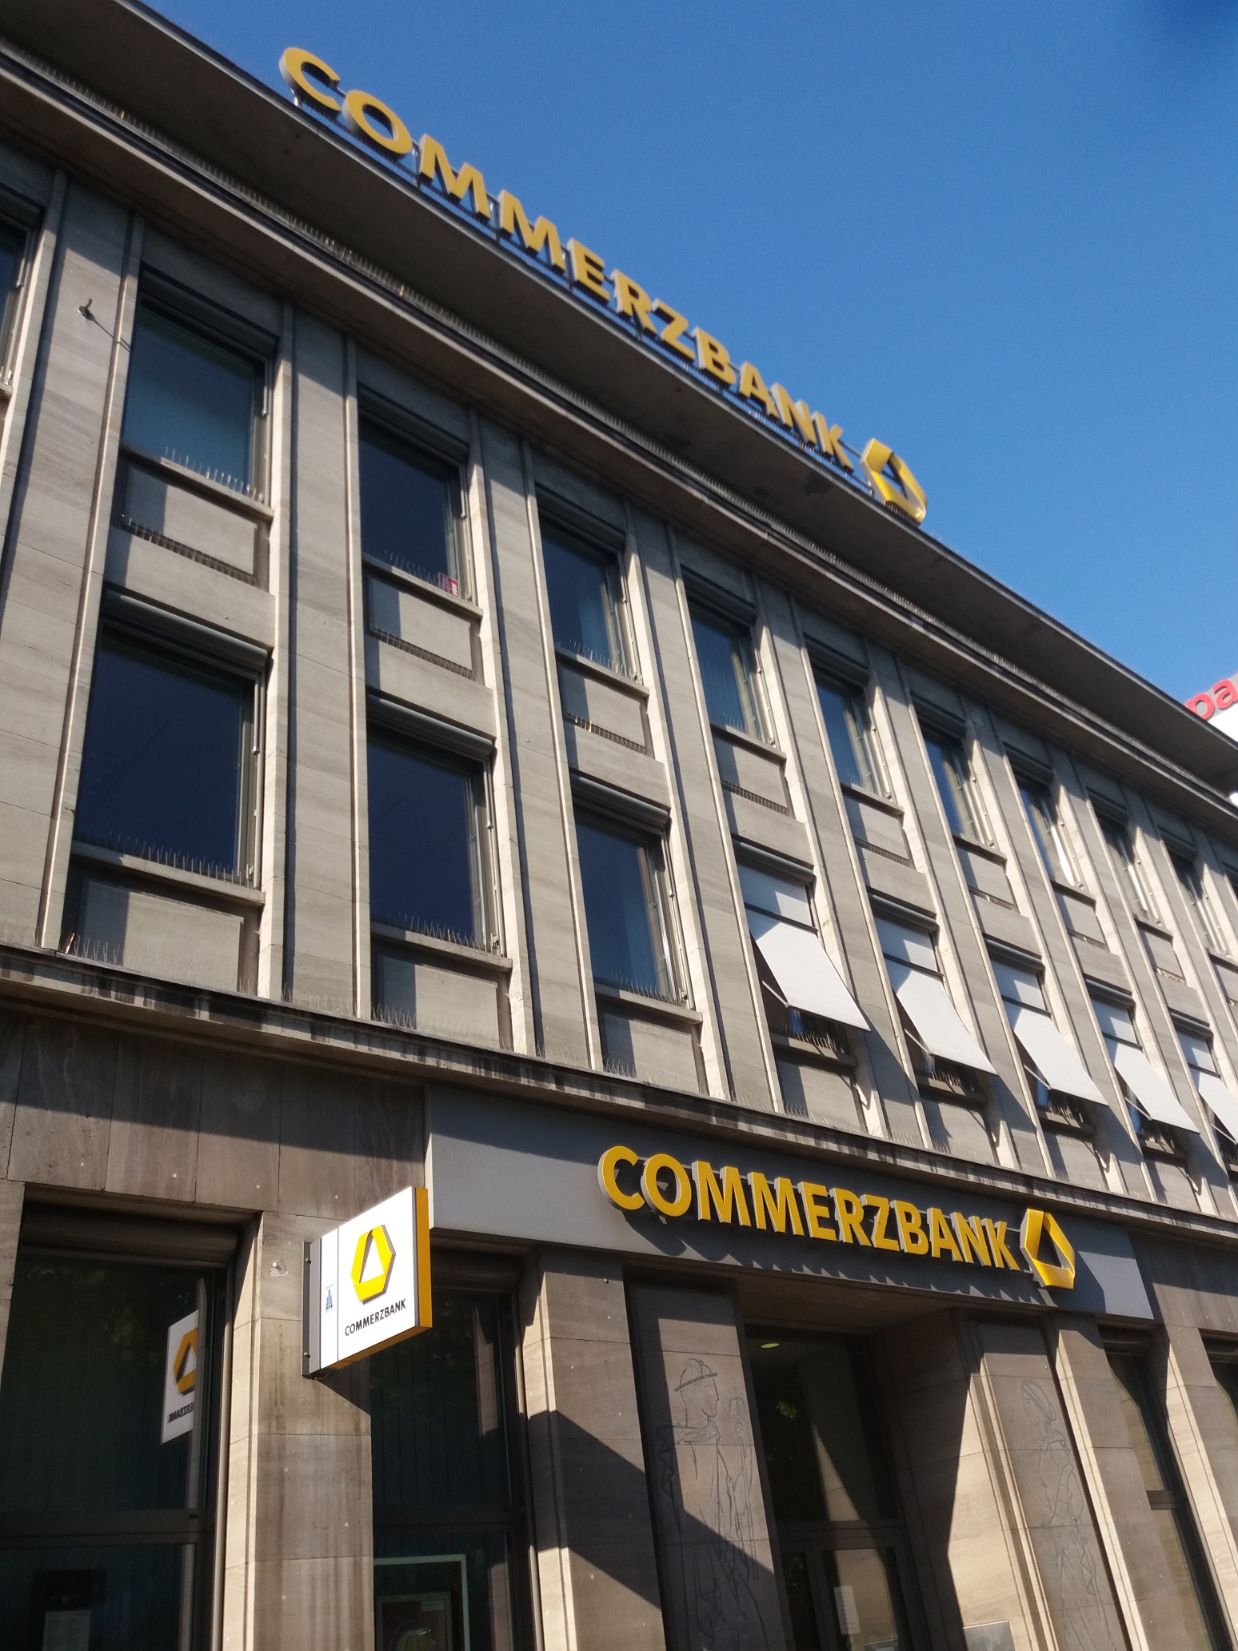 Commerzbank-Duisburg kantoor